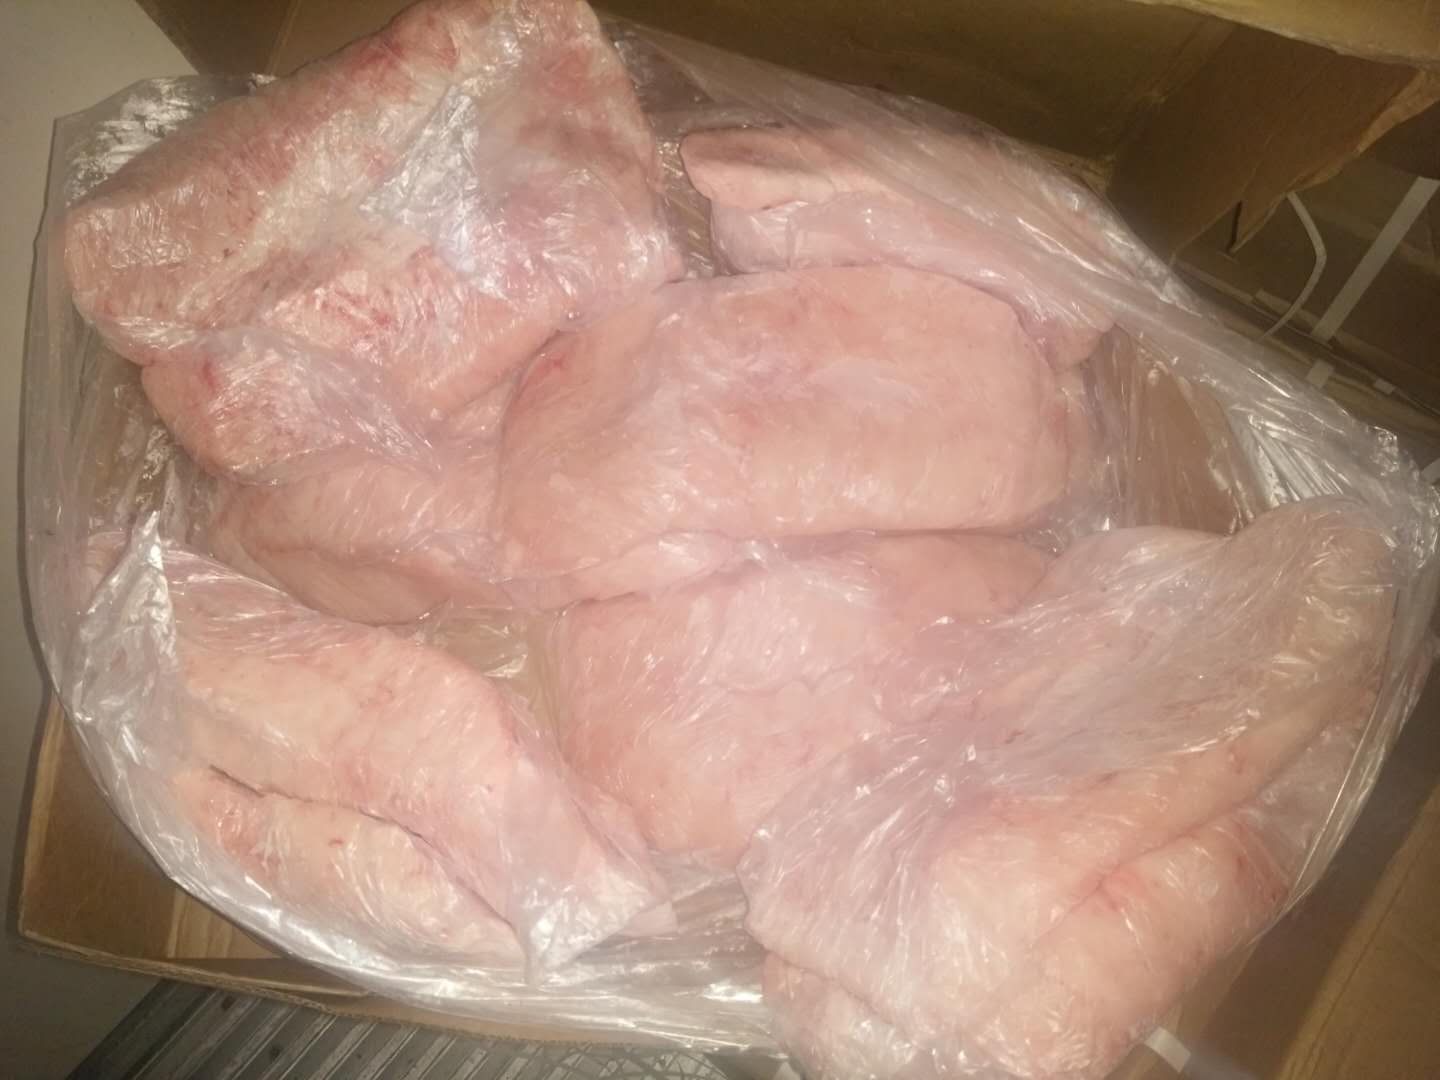 buy/order frozen certified lamb tail fat